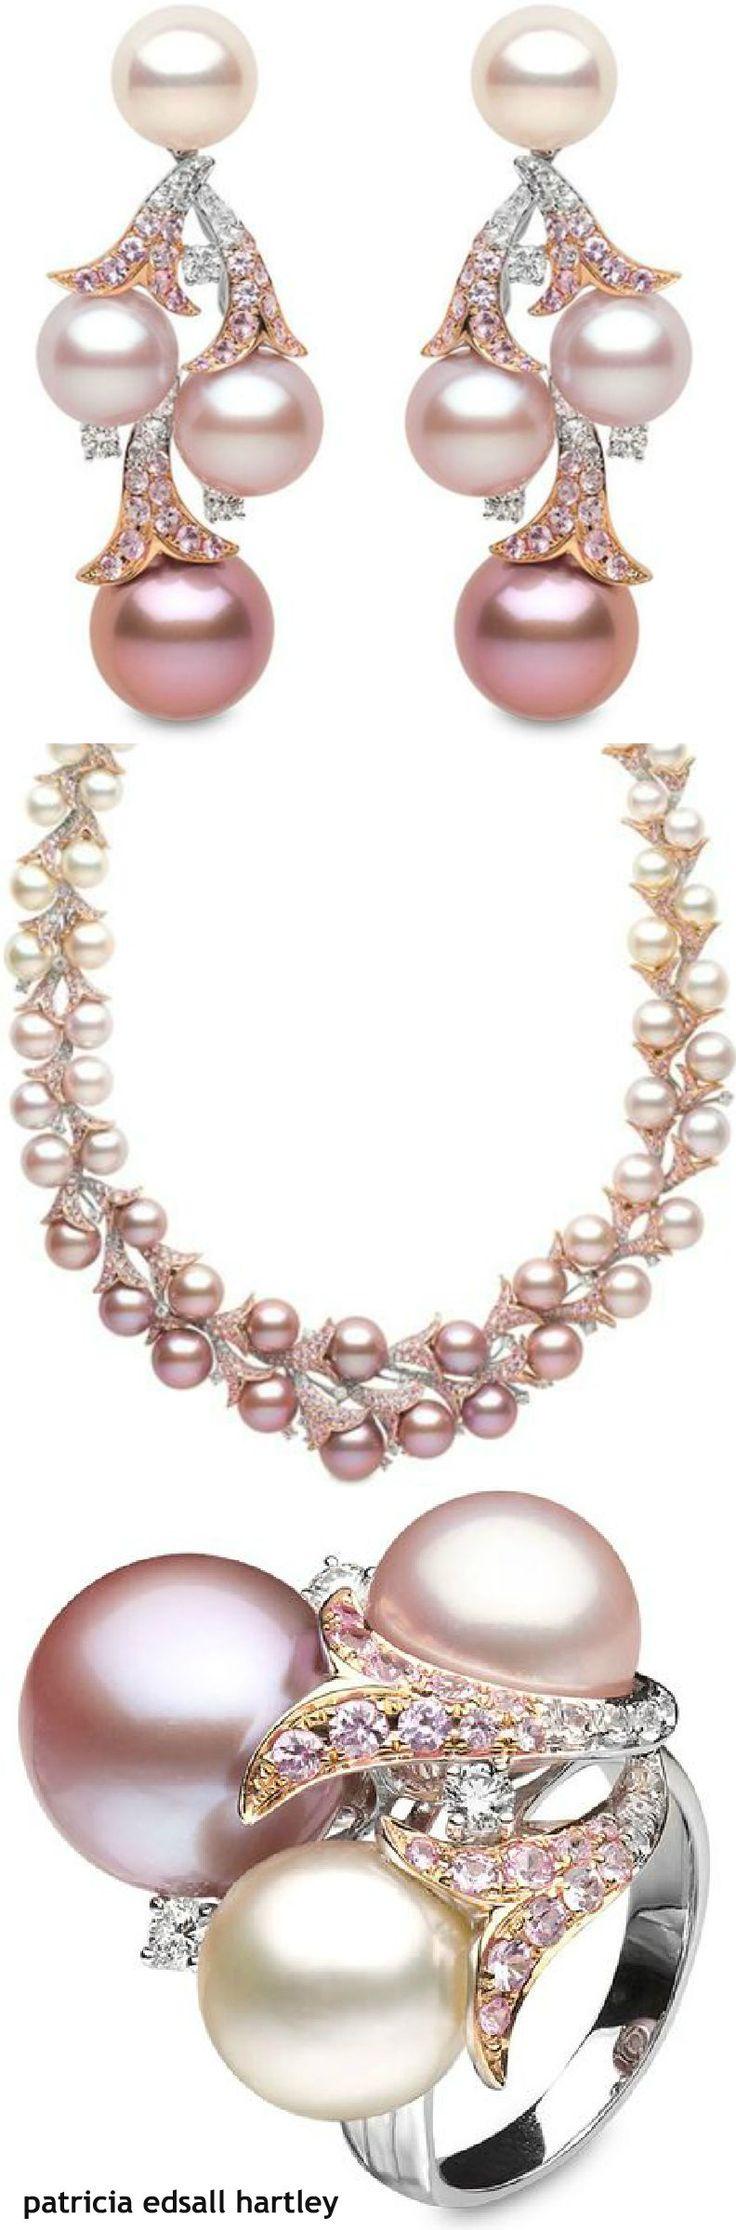 زفاف - Patricia Edsall Hartley - Pearl Necklace And Earrings 